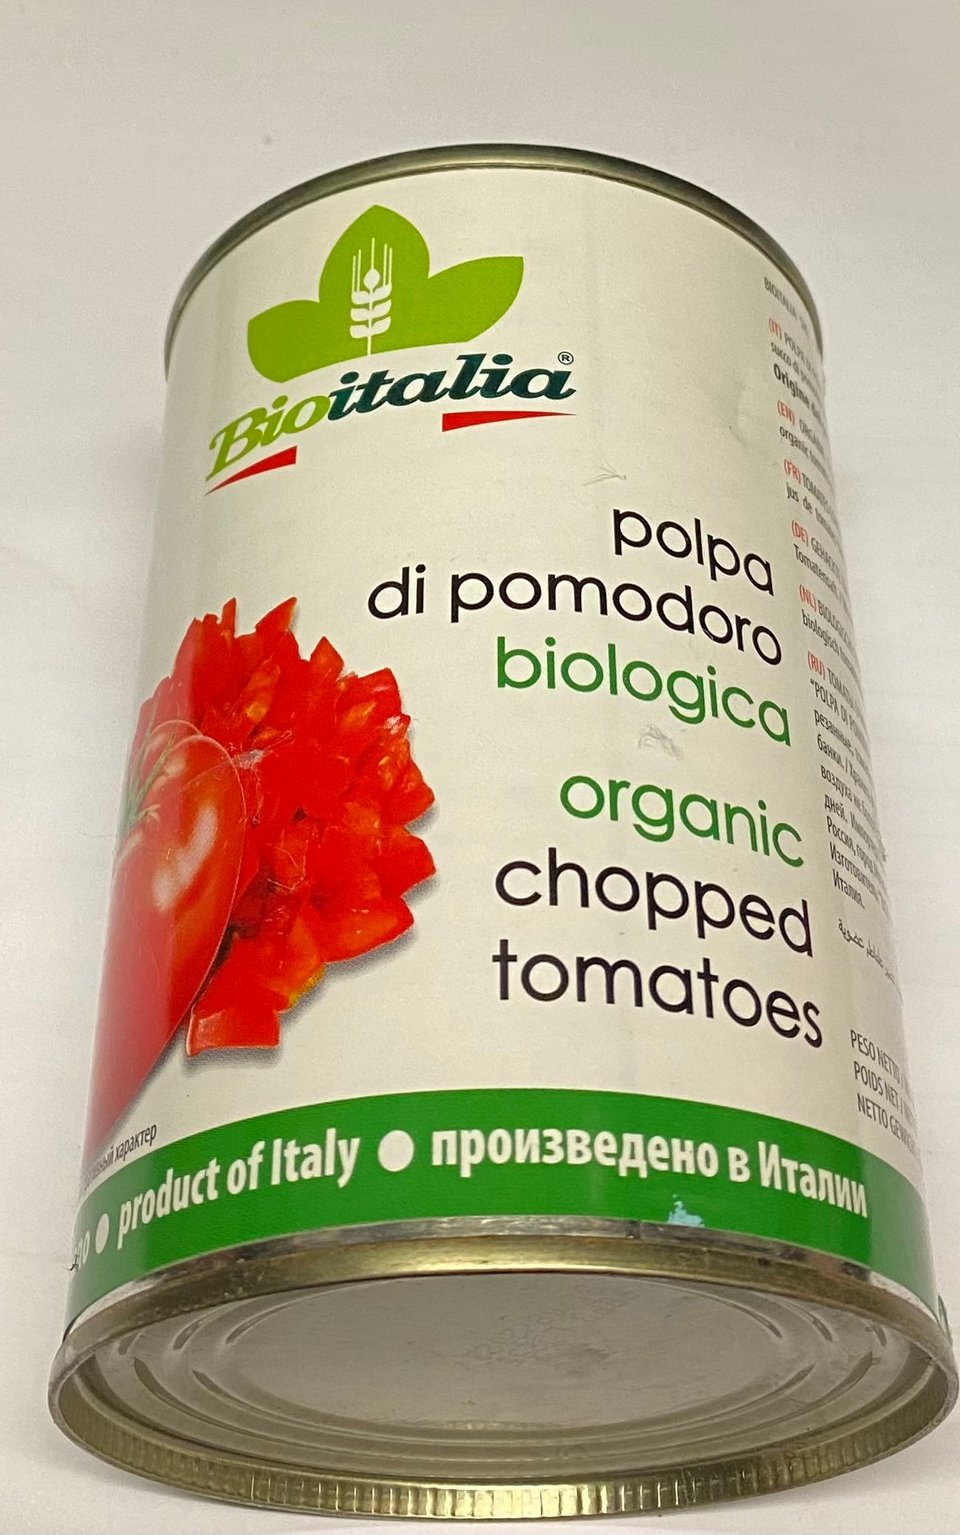 Bio Italia Polpa Fijne Tomatenpulp